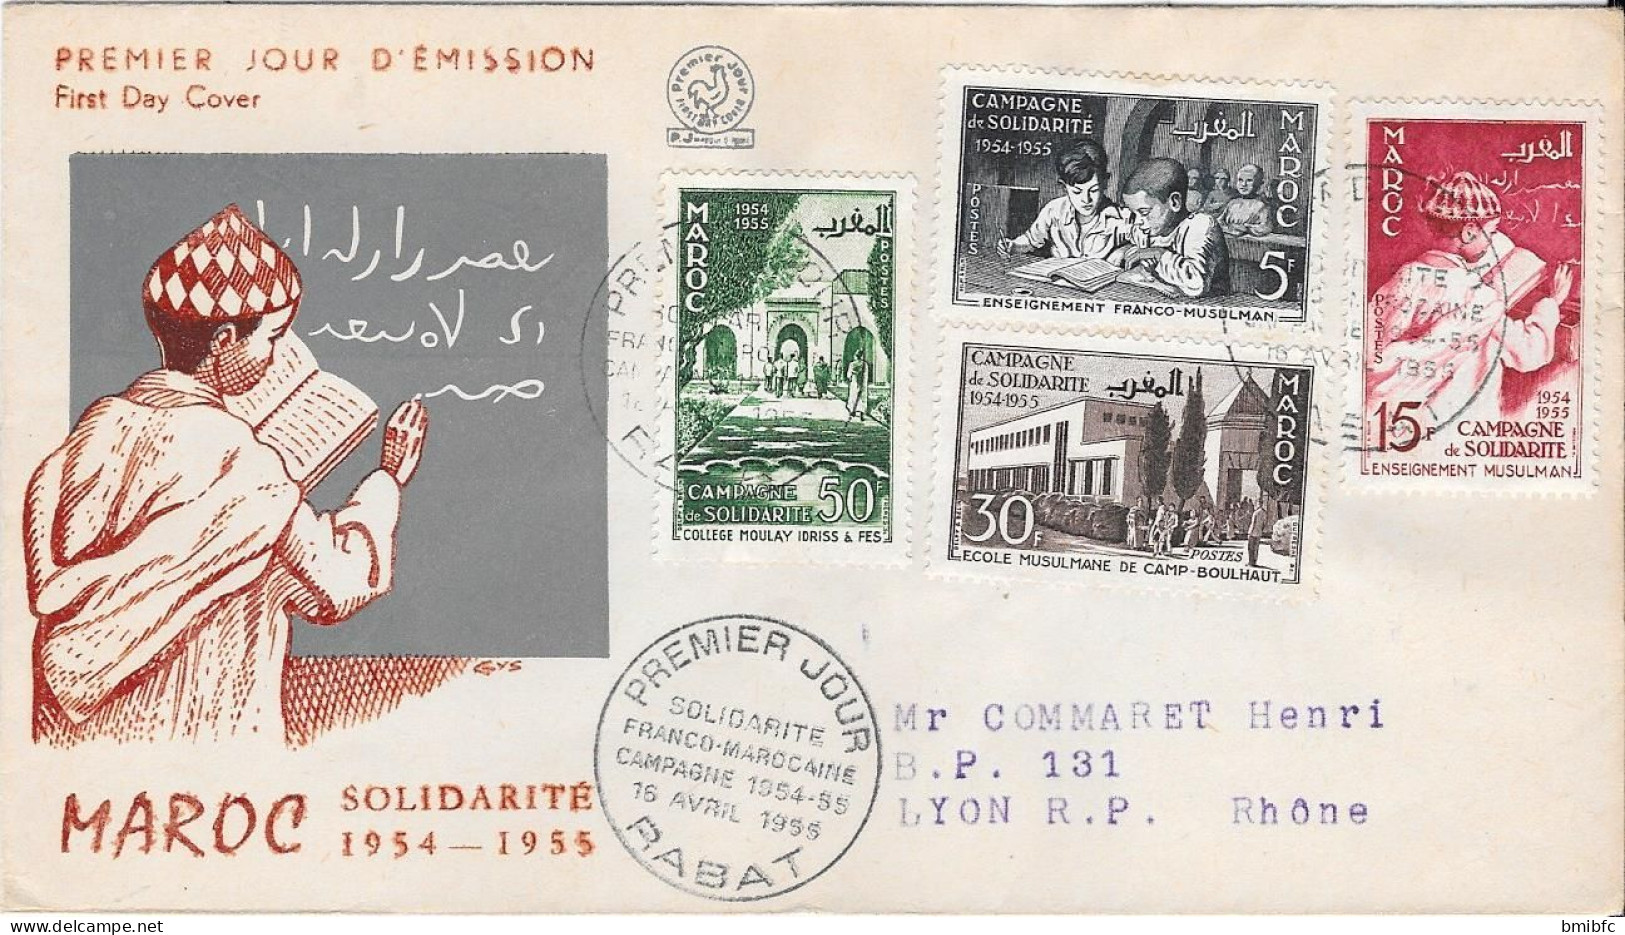 MAROC SOLIDARITÉ 1954-1955 - Morocco (1956-...)